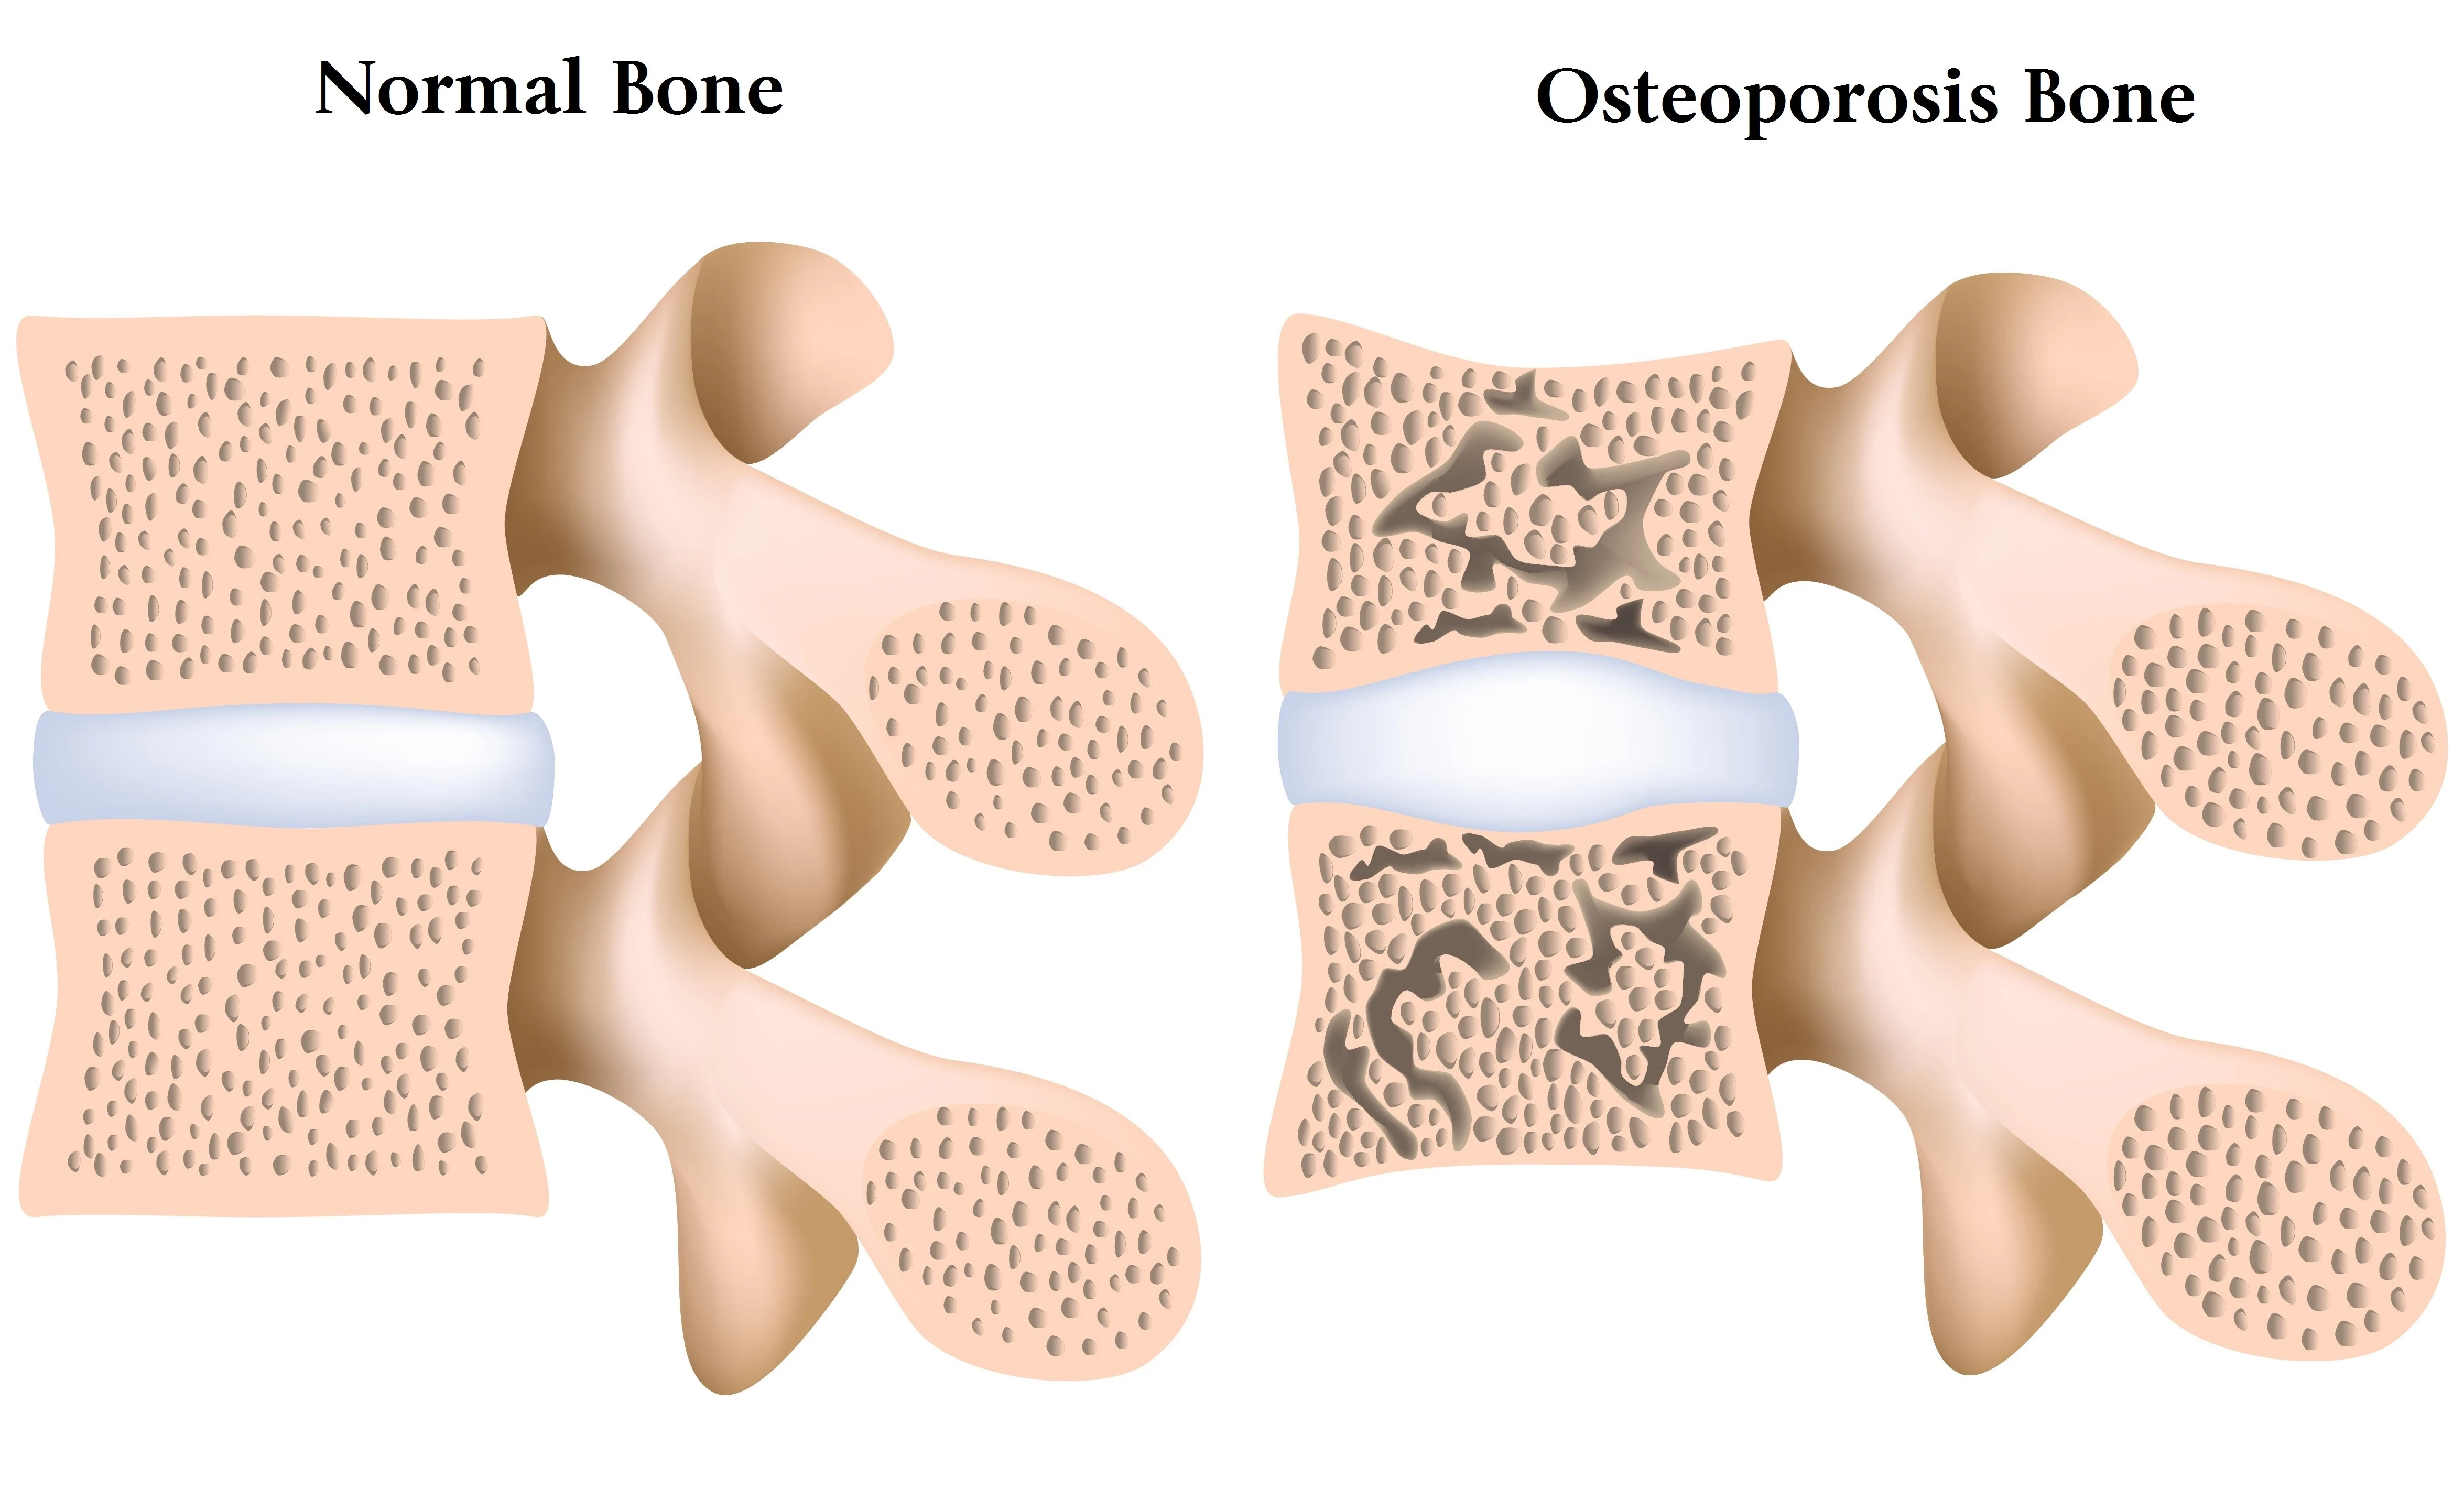 0156470128412521-osteoporosis-bone-vs-normal-bone.jpg